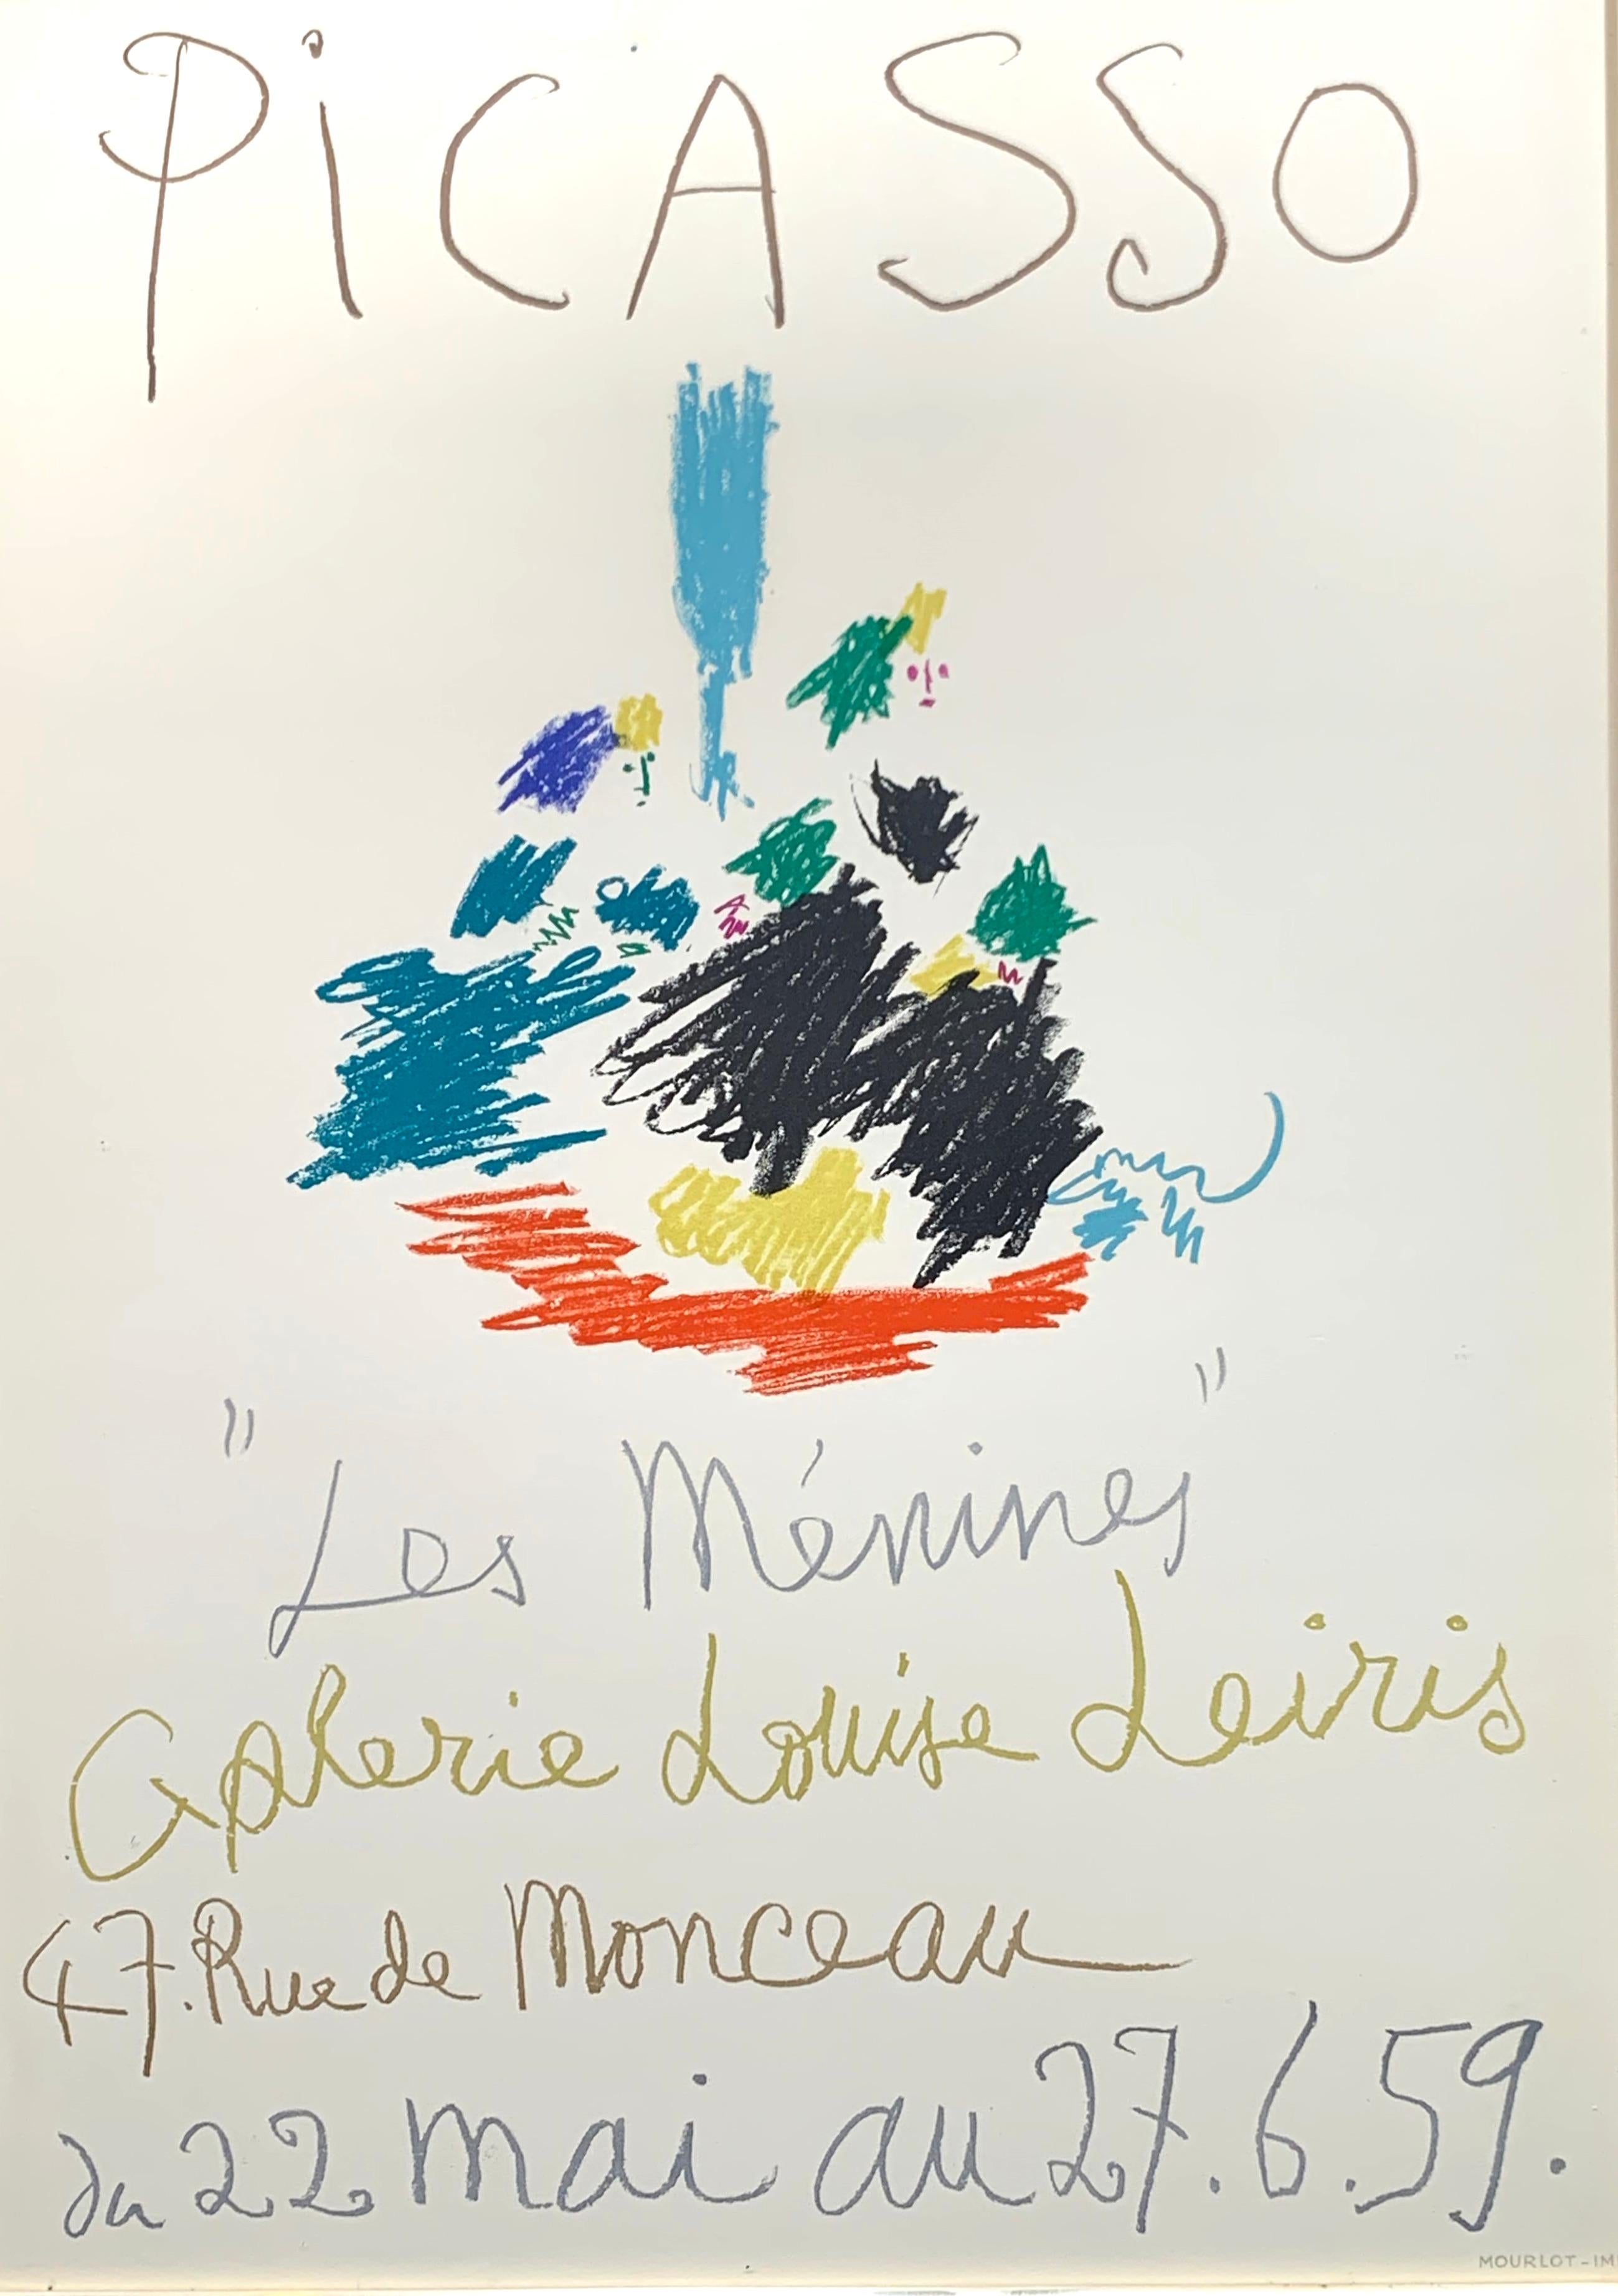 Les Menines Mourlot Exhibition Poster - Print by Pablo Picasso